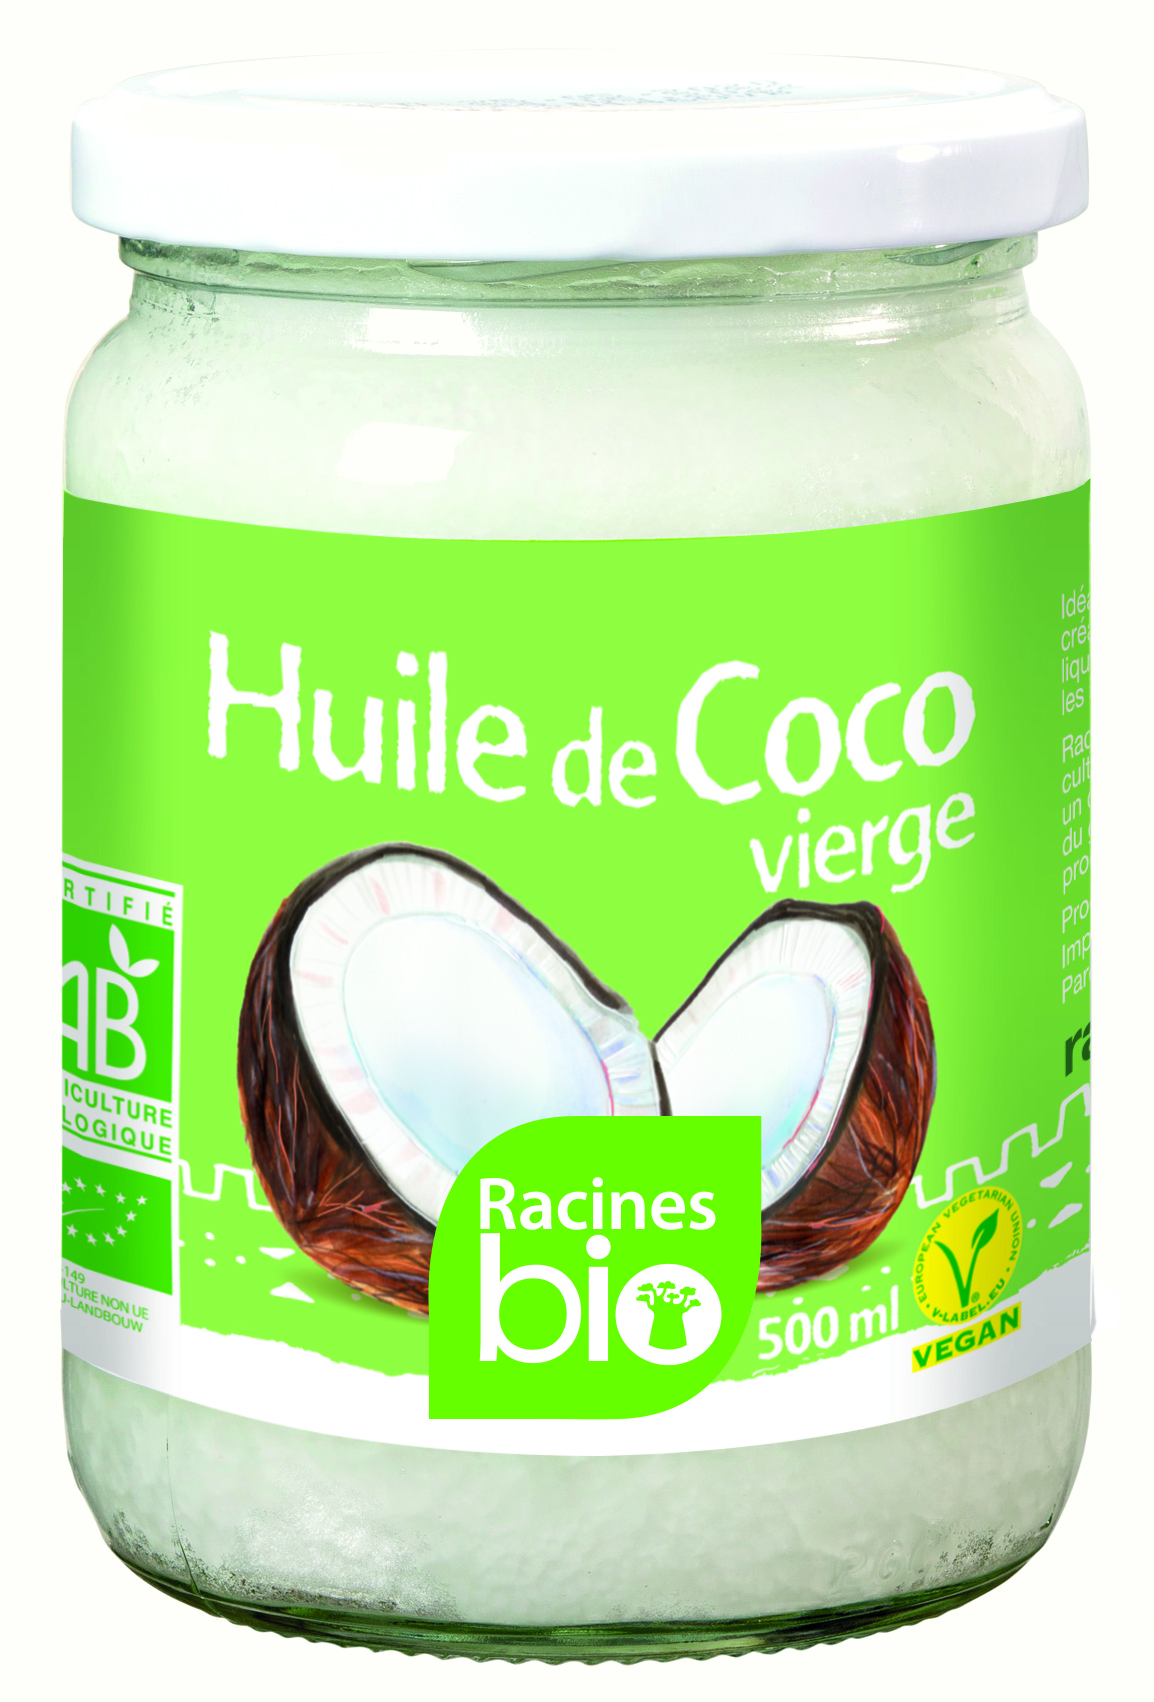 Virgin Coconut Oil (12 X 500 Ml) - Racines Bio